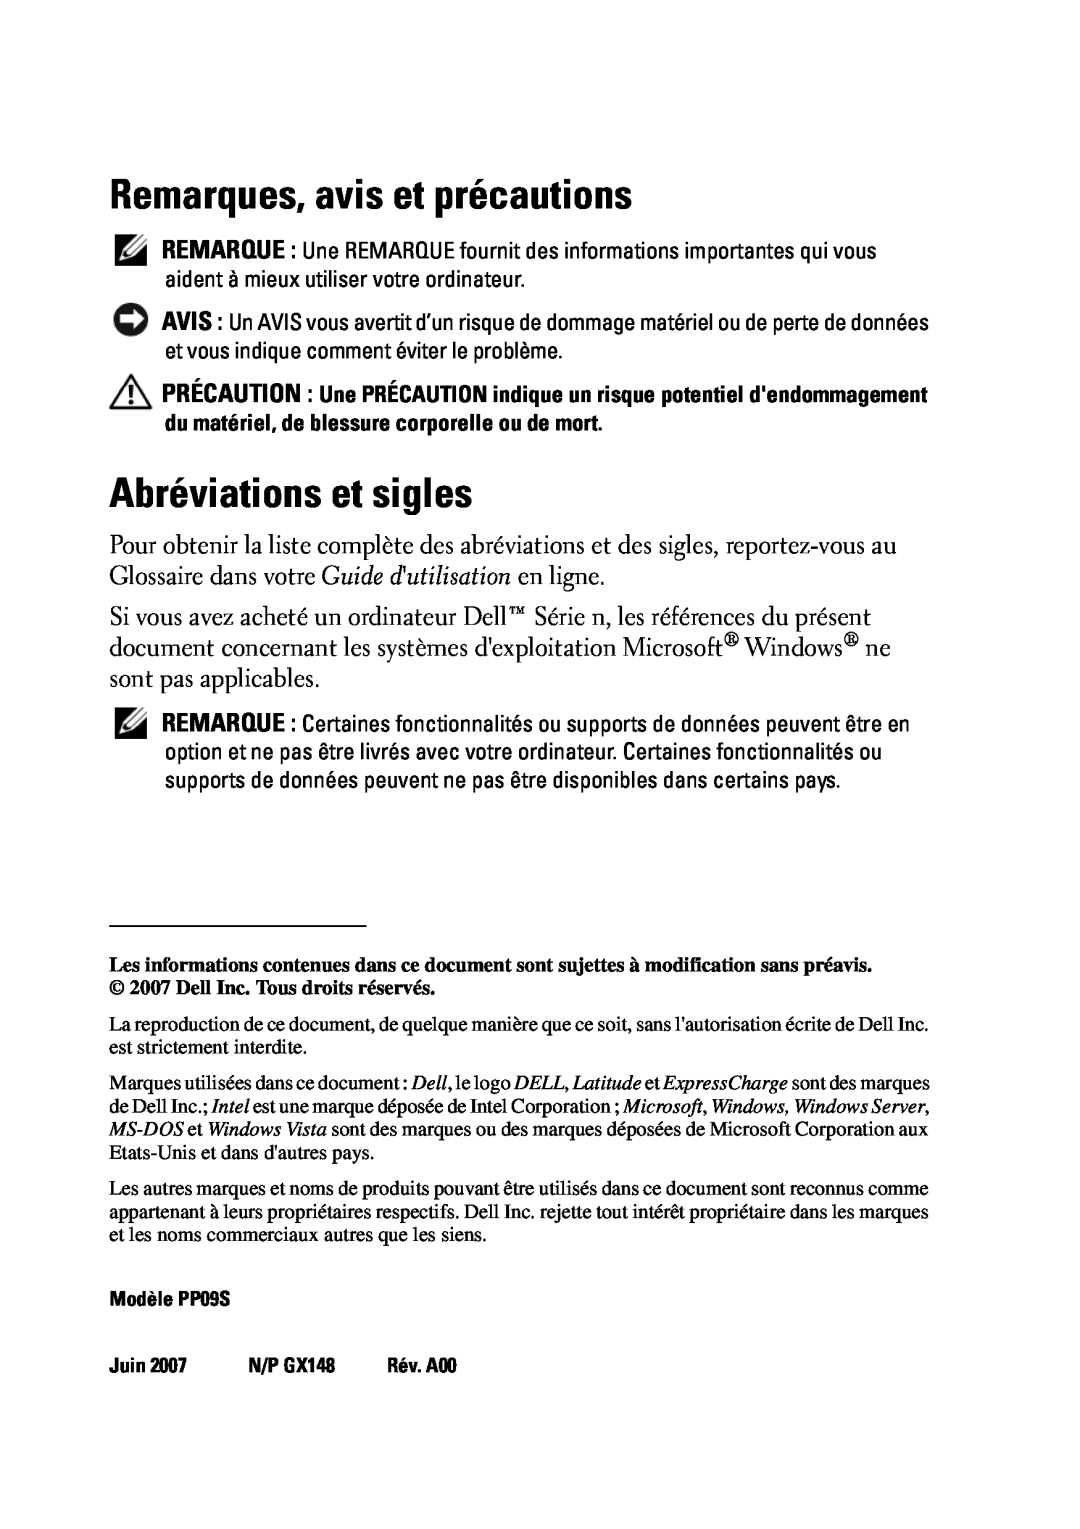 Dell D430 manual Remarques, avis et précautions, Abréviations et sigles, Modèle PP09S, Juin, N/P GX148 